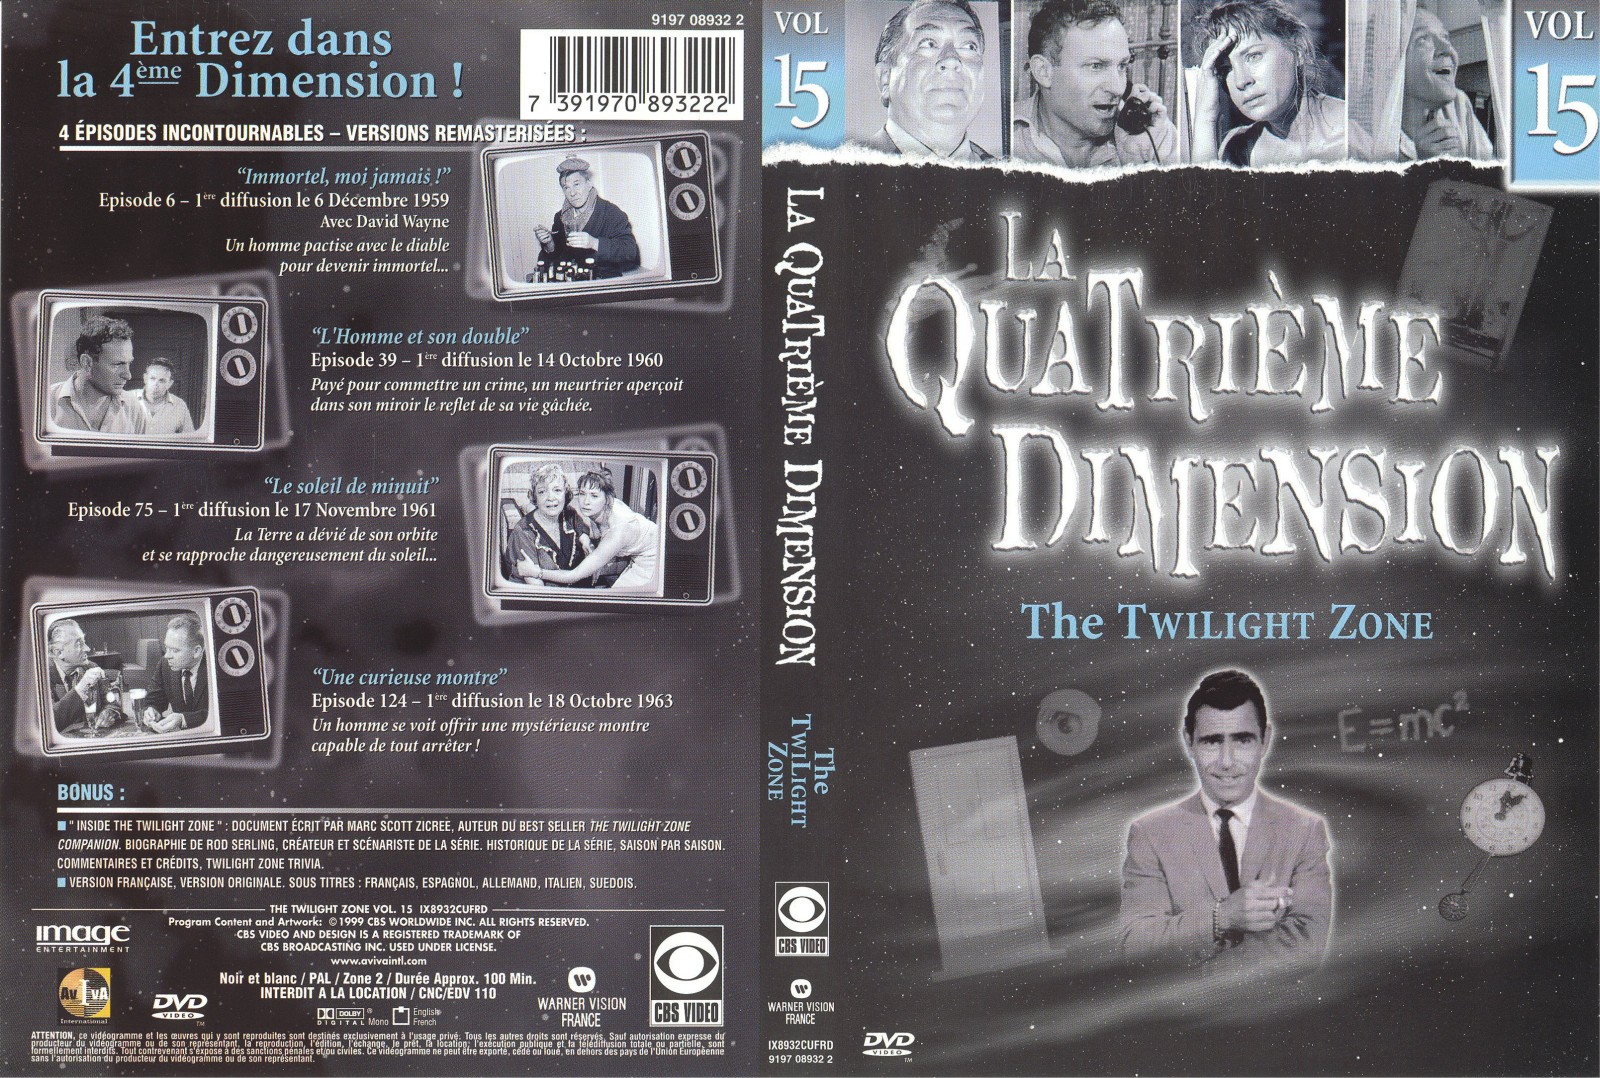 Jaquette DVD La quatrieme dimension vol 15